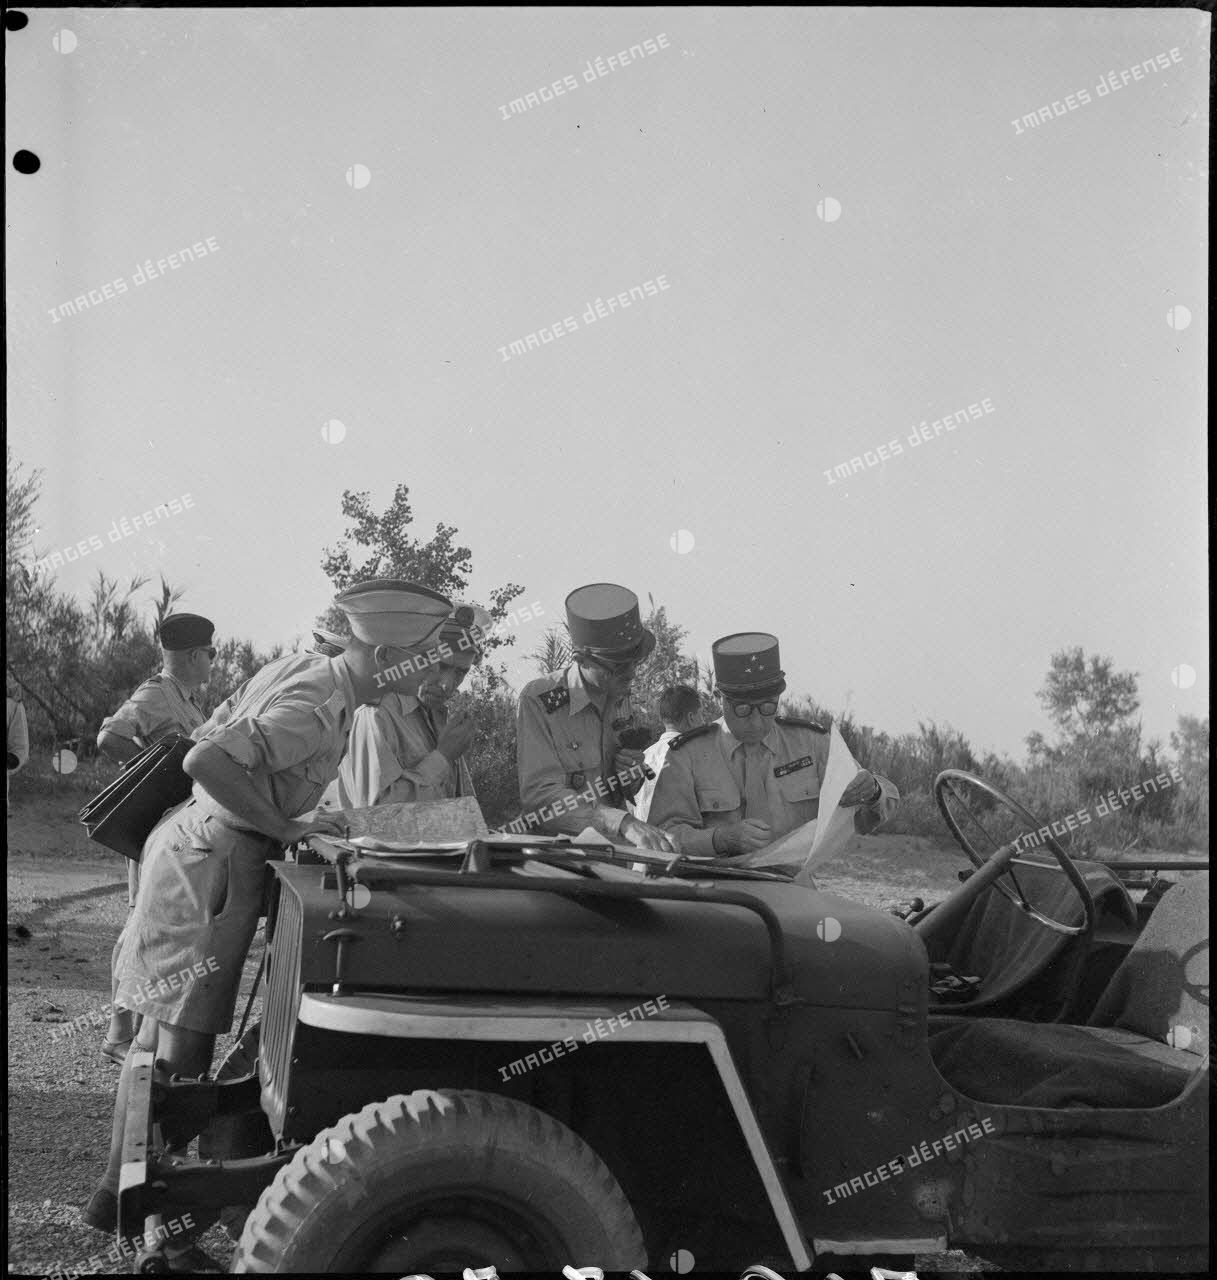 Le général Philippe Leclerc consulte une carte sur le capot d'un véhicule militaire, assisté d'autorités militaires.